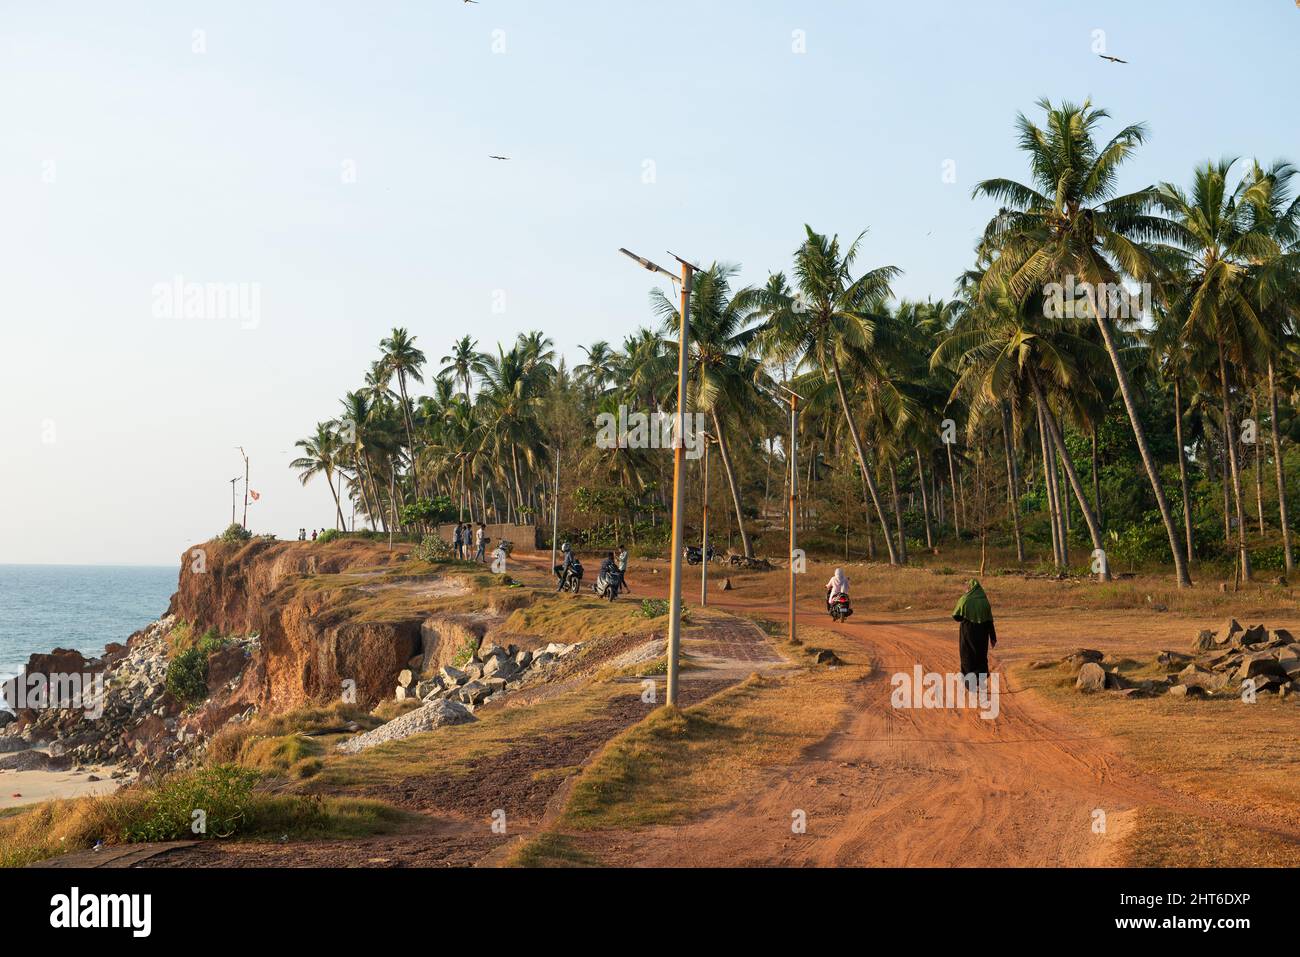 Varkala, India - January 2022: The cliff Stock Photo